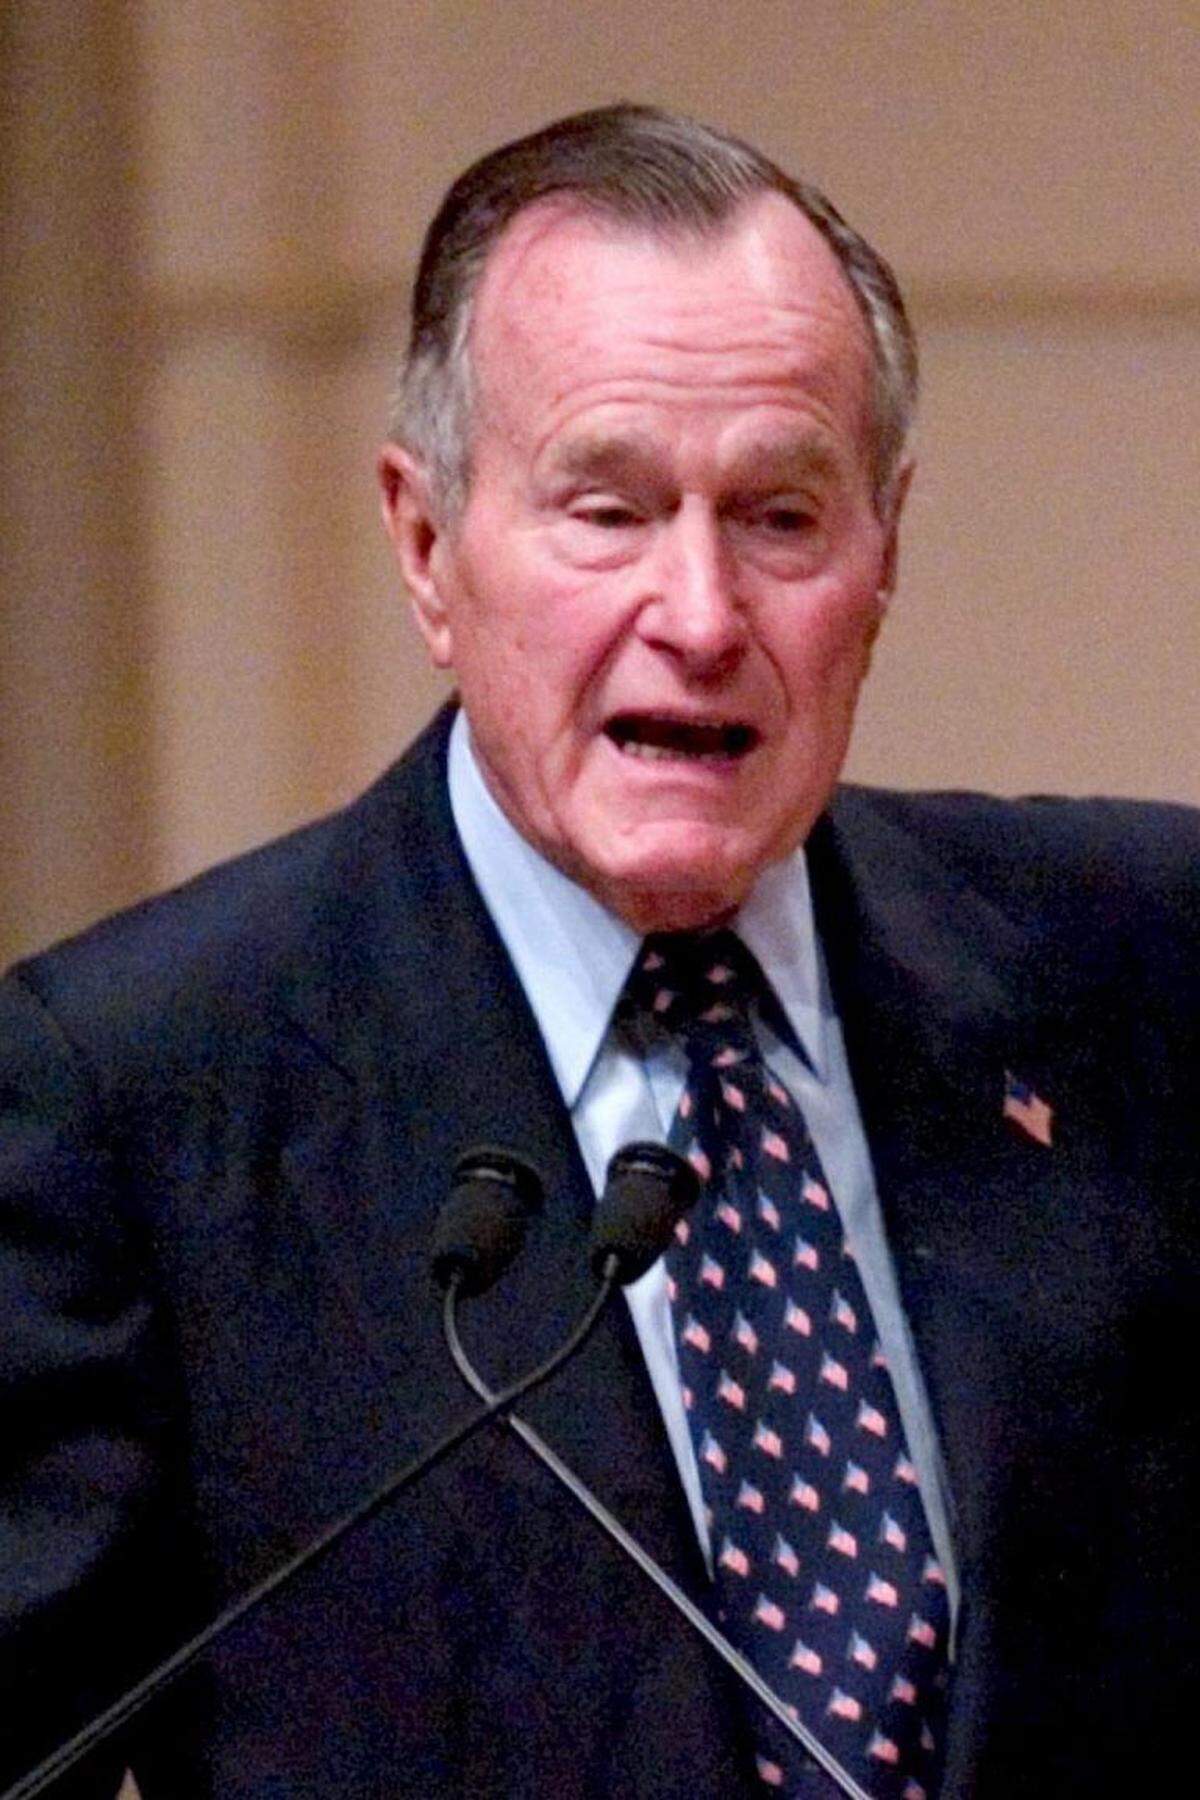 "Margaret war mit Sicherheit eine der stärksten Befürworterinnen von Freiheit und freien Märkten im gesamten 20. Jahrhundert." Ex-US-Präsident George Bush senior